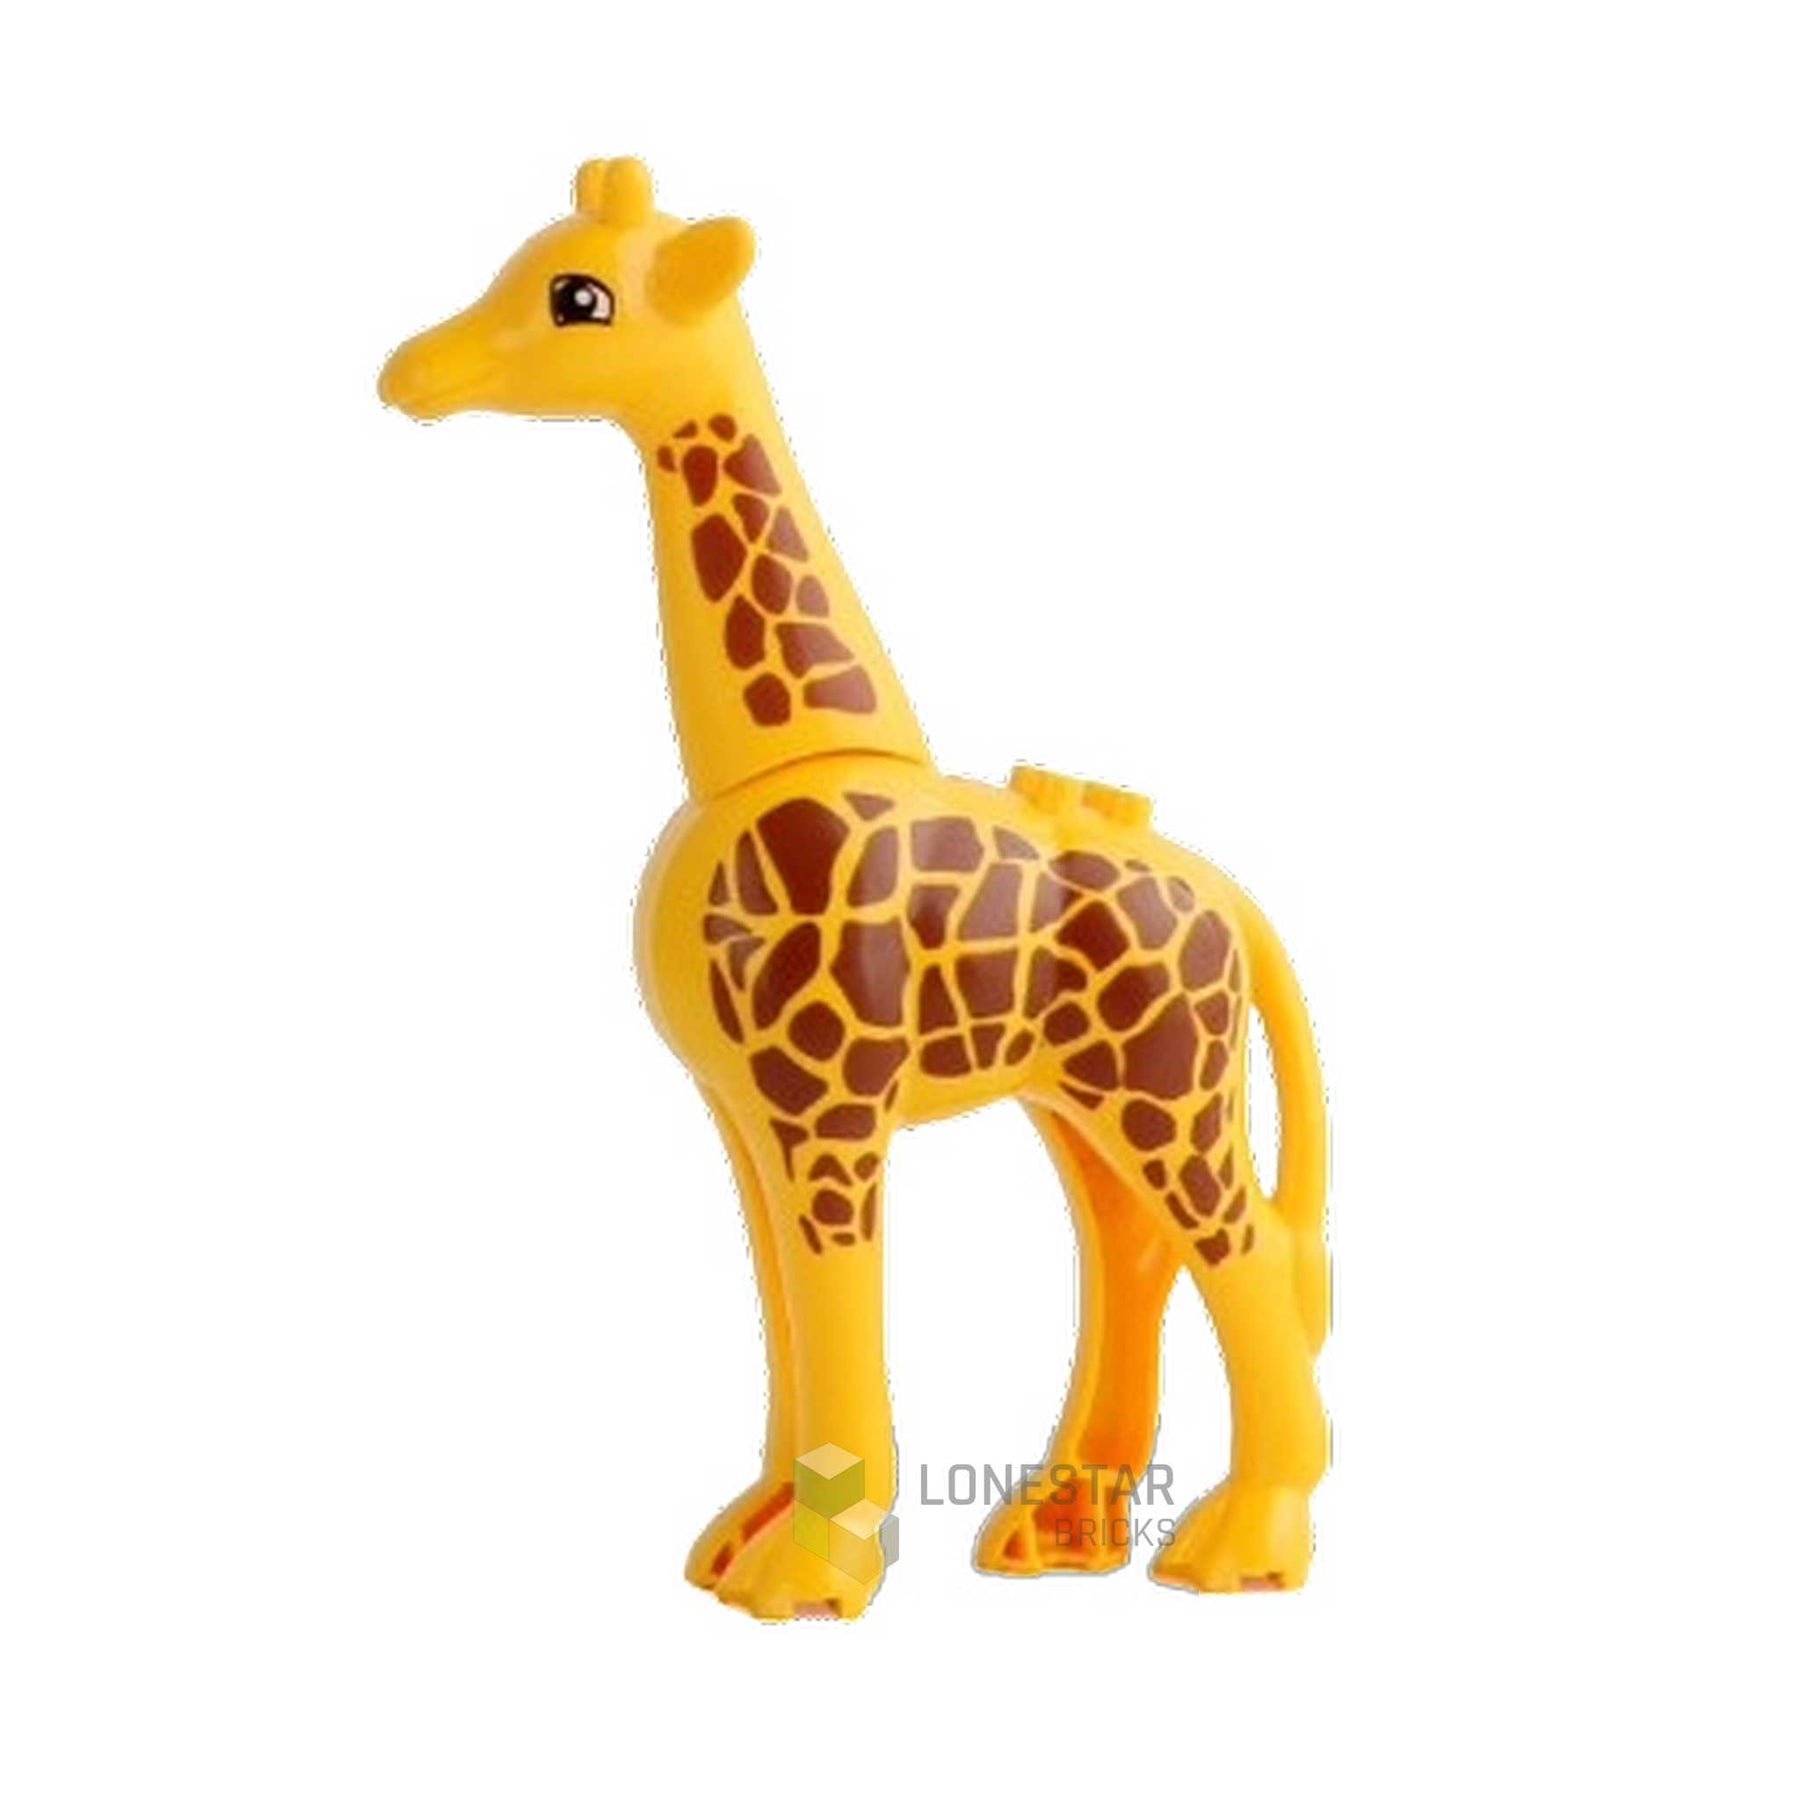 LB-40075-Giraffe groß (Lonestar-Bricks)